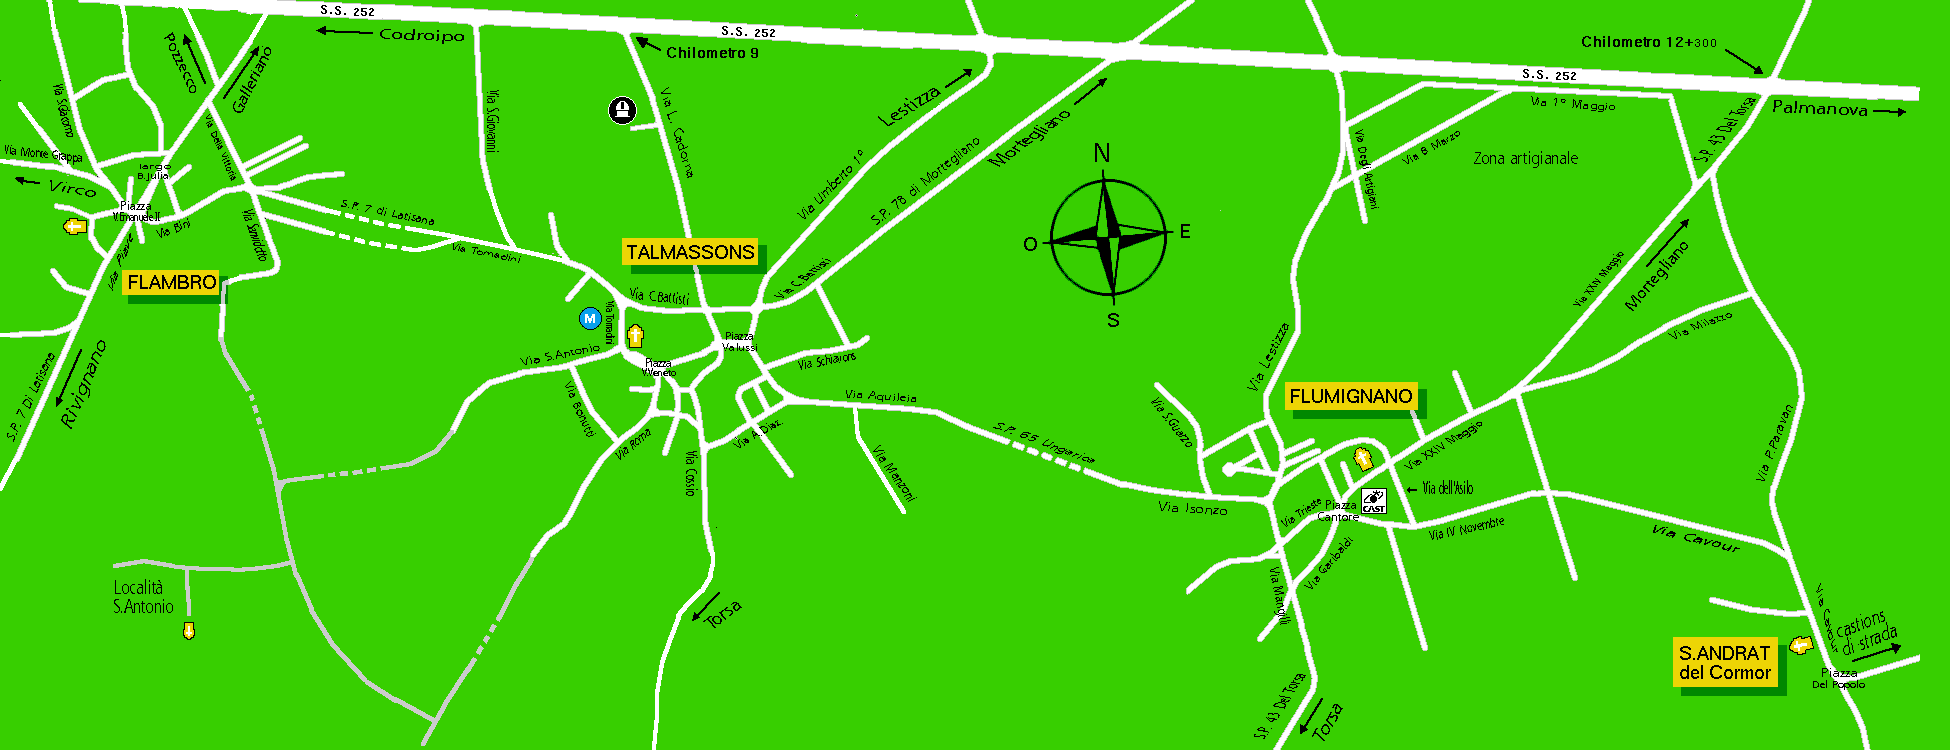 Mappa del comune di Talmassons